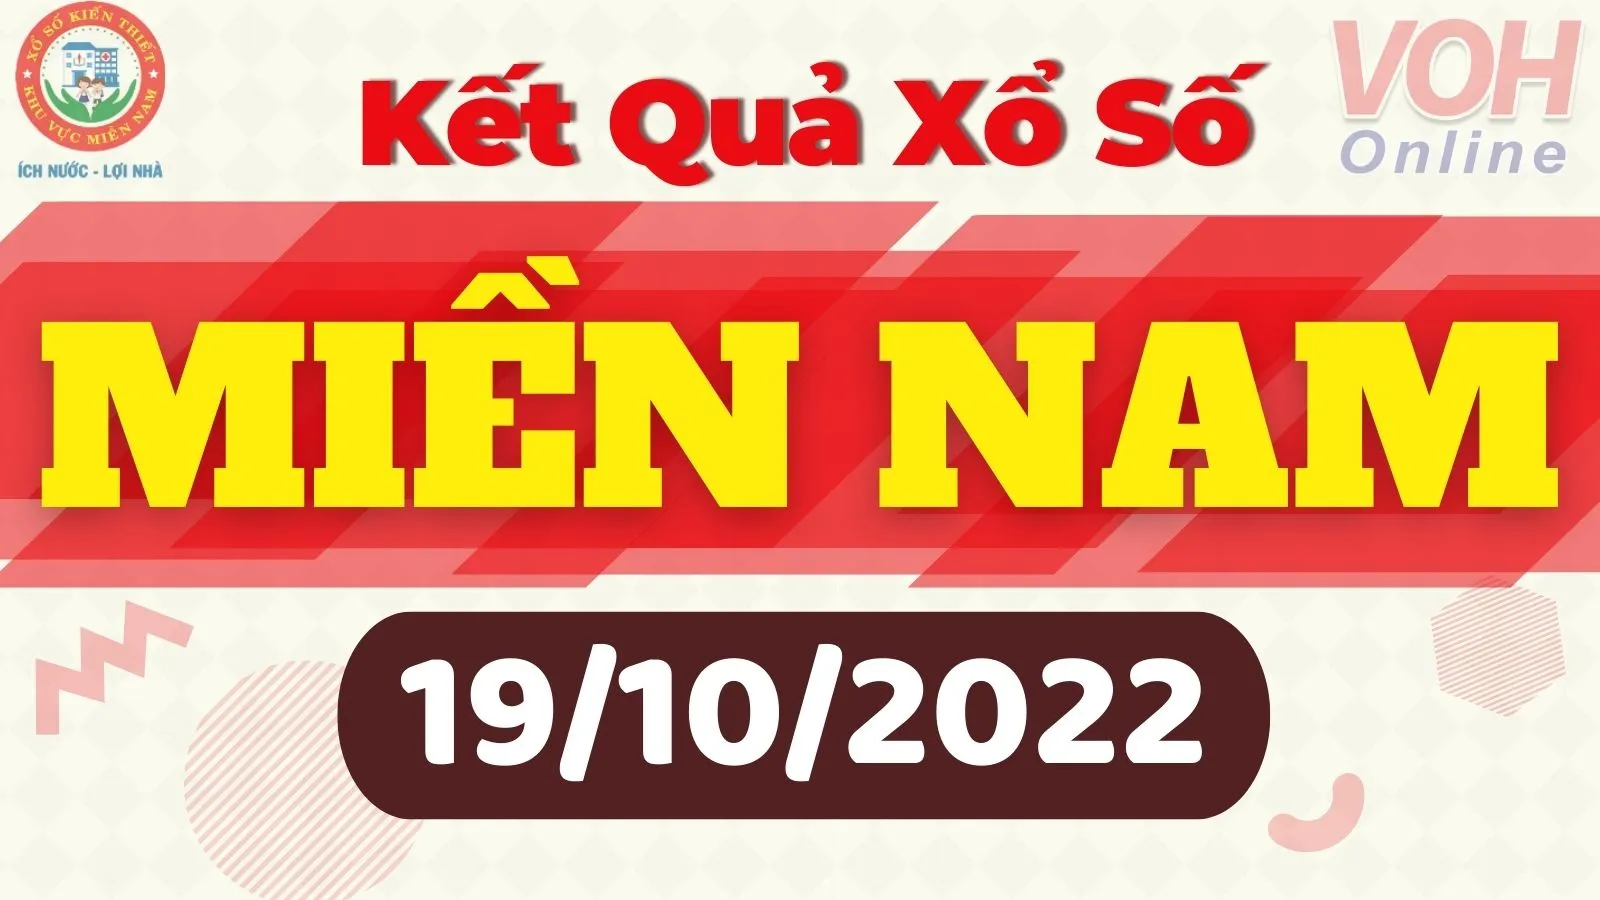 Xổ số miền Nam hôm nay - XSMN 19/10 - SXMN 19/10/2022 - Kết quả xổ số hôm nay ngày 19 tháng 10